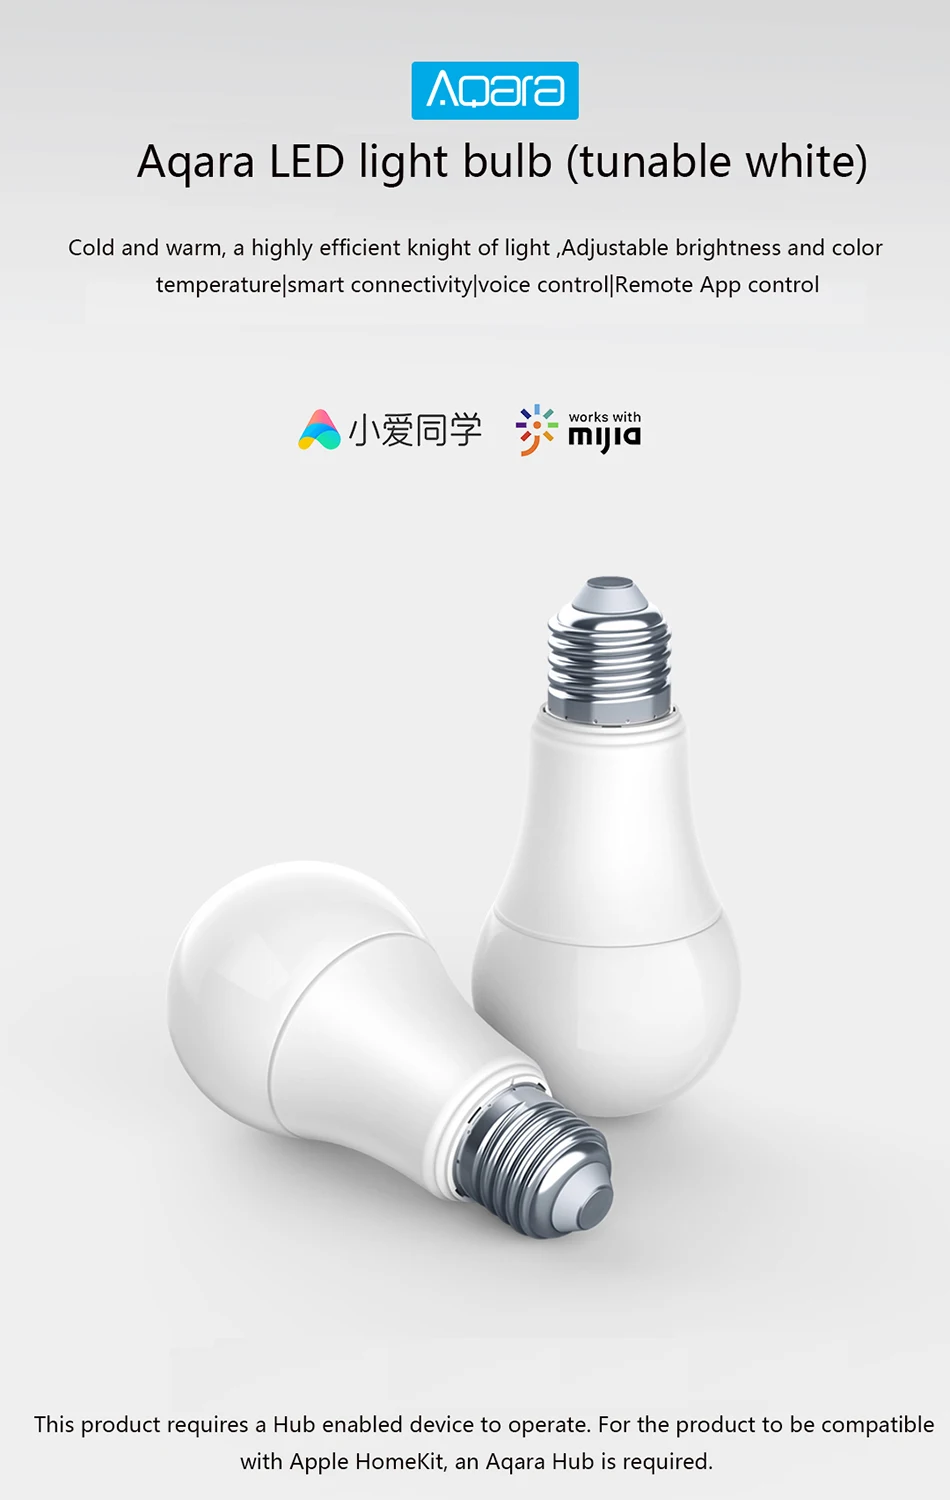 Bund светодиодный светильник Xiao mi Aqara 9W E27 2700 K-6500 K 806lum умный белый светодиодный светильник лампа работает с домашними комплектами и приложением mi Home